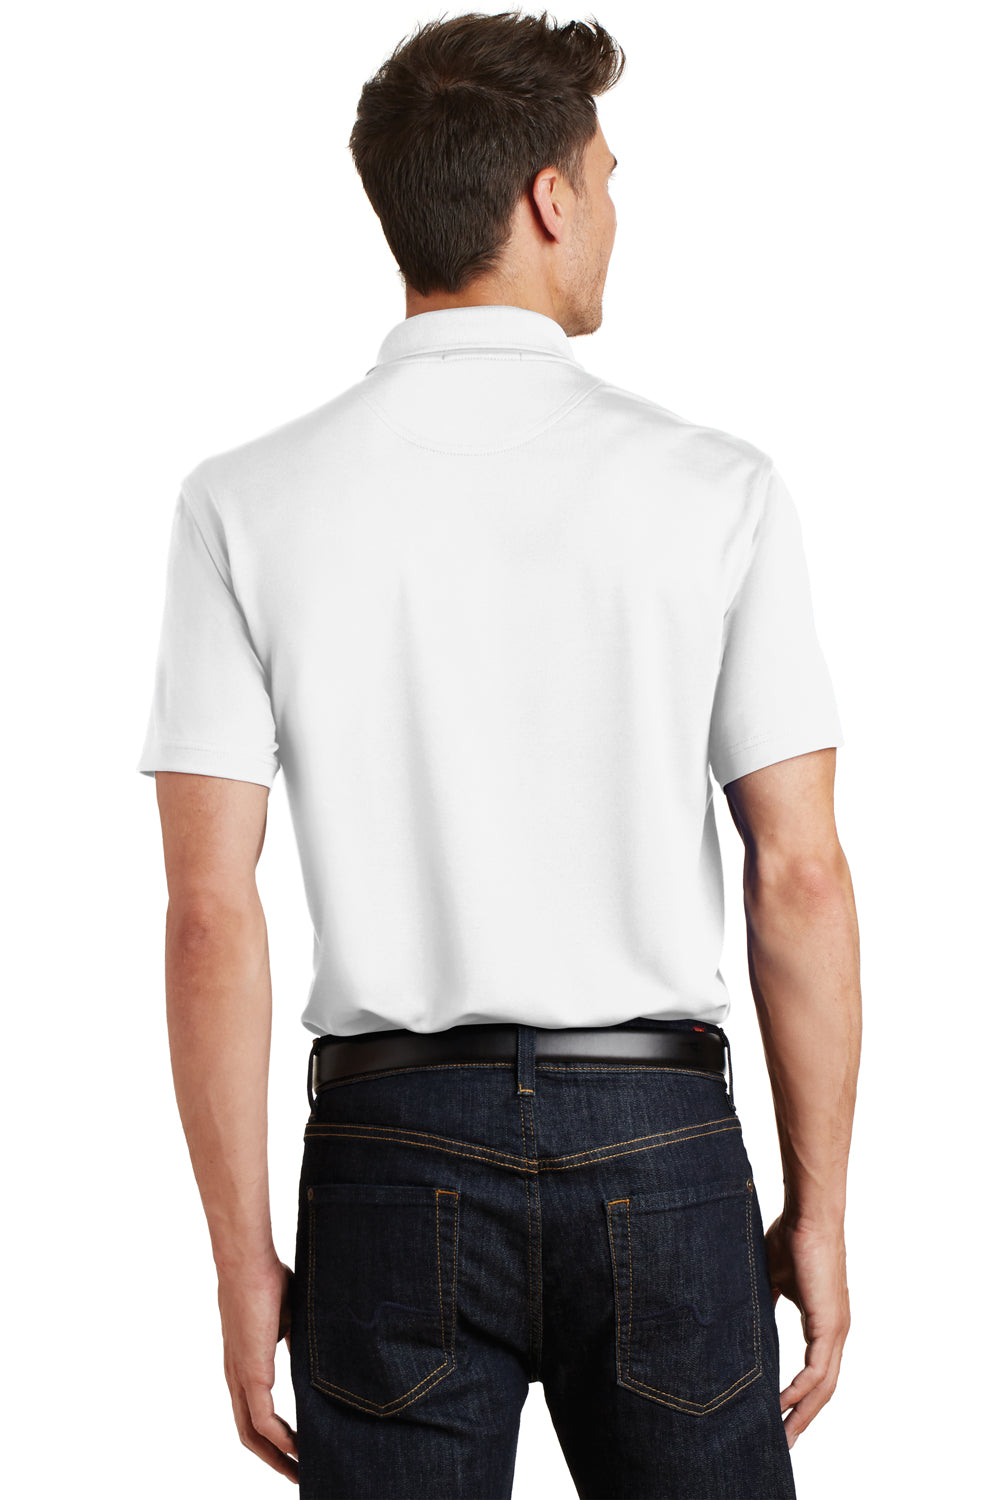 Port Authority K497 Mens Moisture Wicking Short Sleeve Polo Shirt White Back